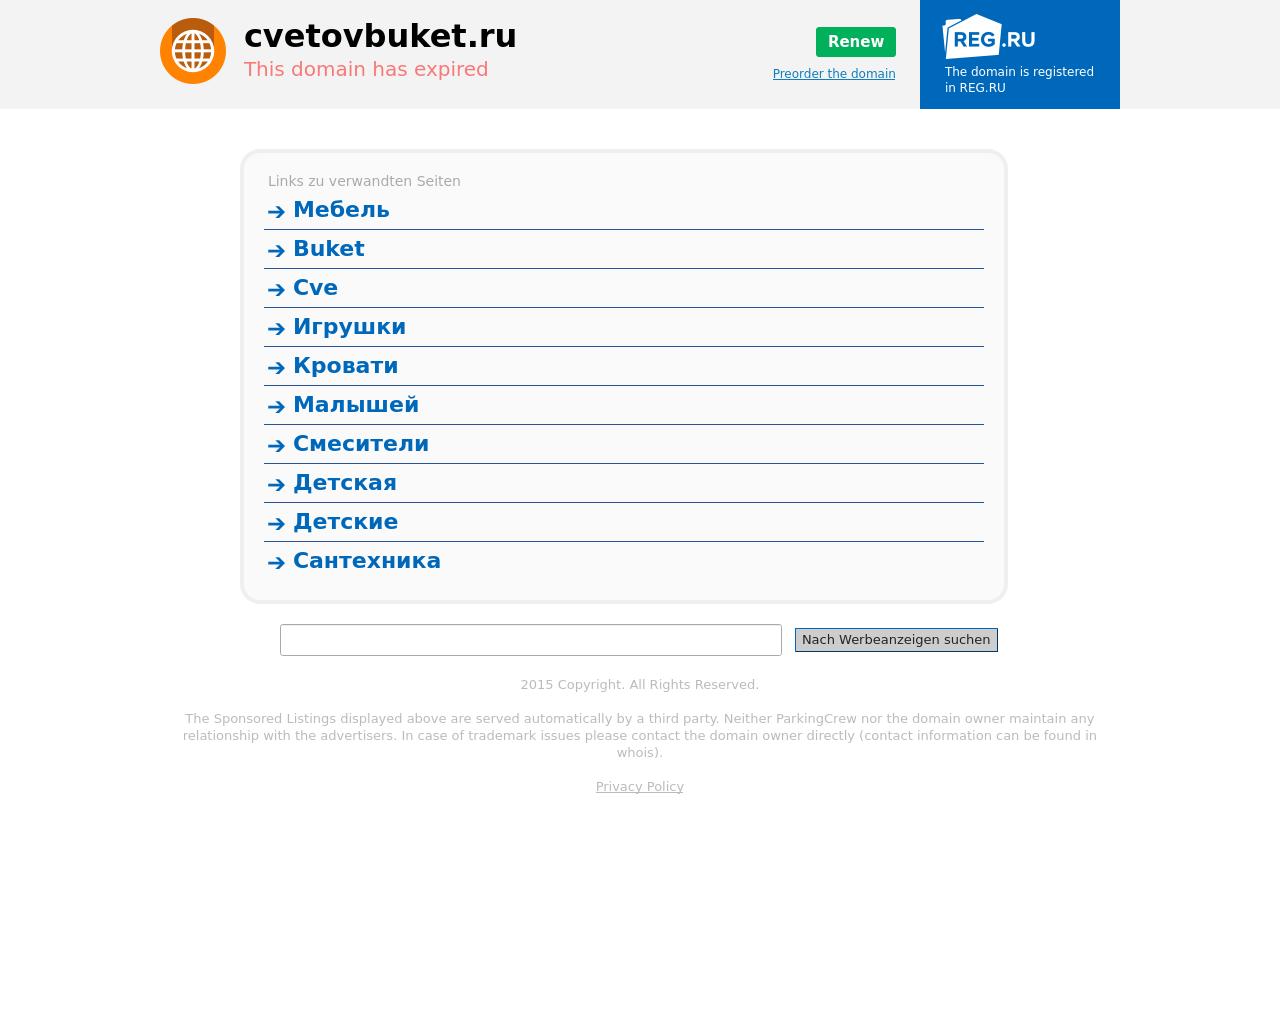 Изображение сайта cvetovbuket.ru в разрешении 1280x1024